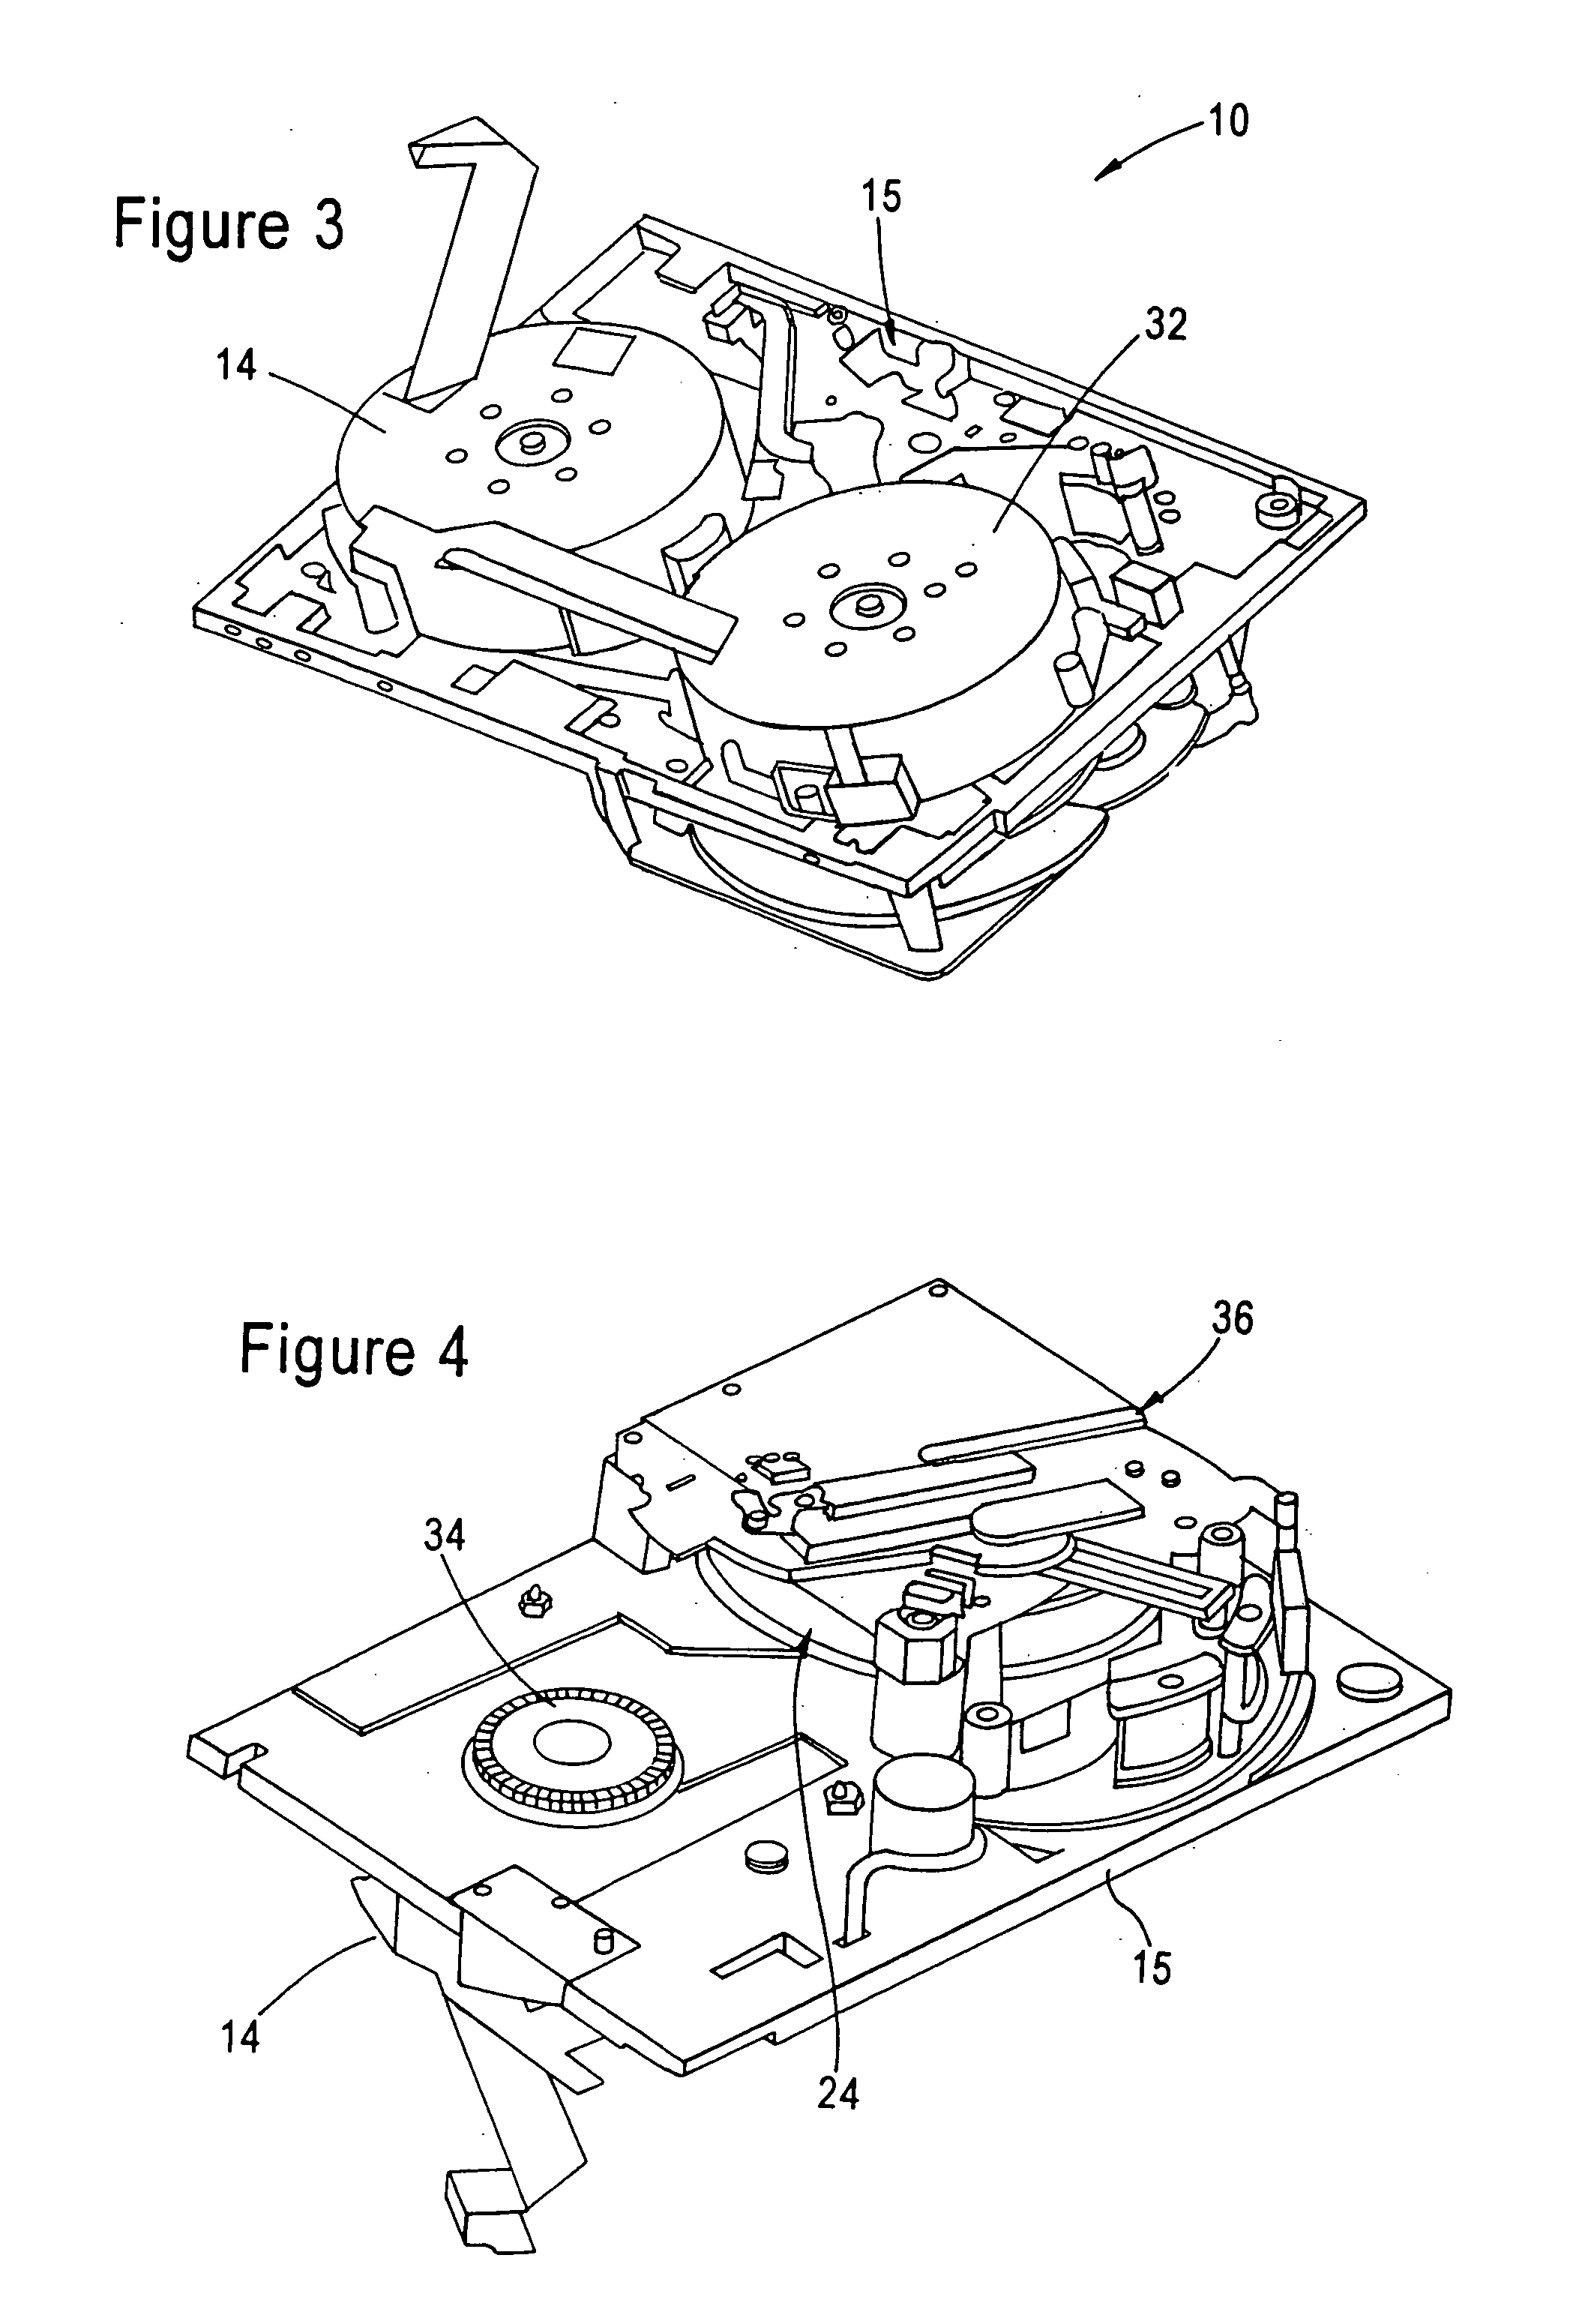 Motor/encoder assembly for tape drives